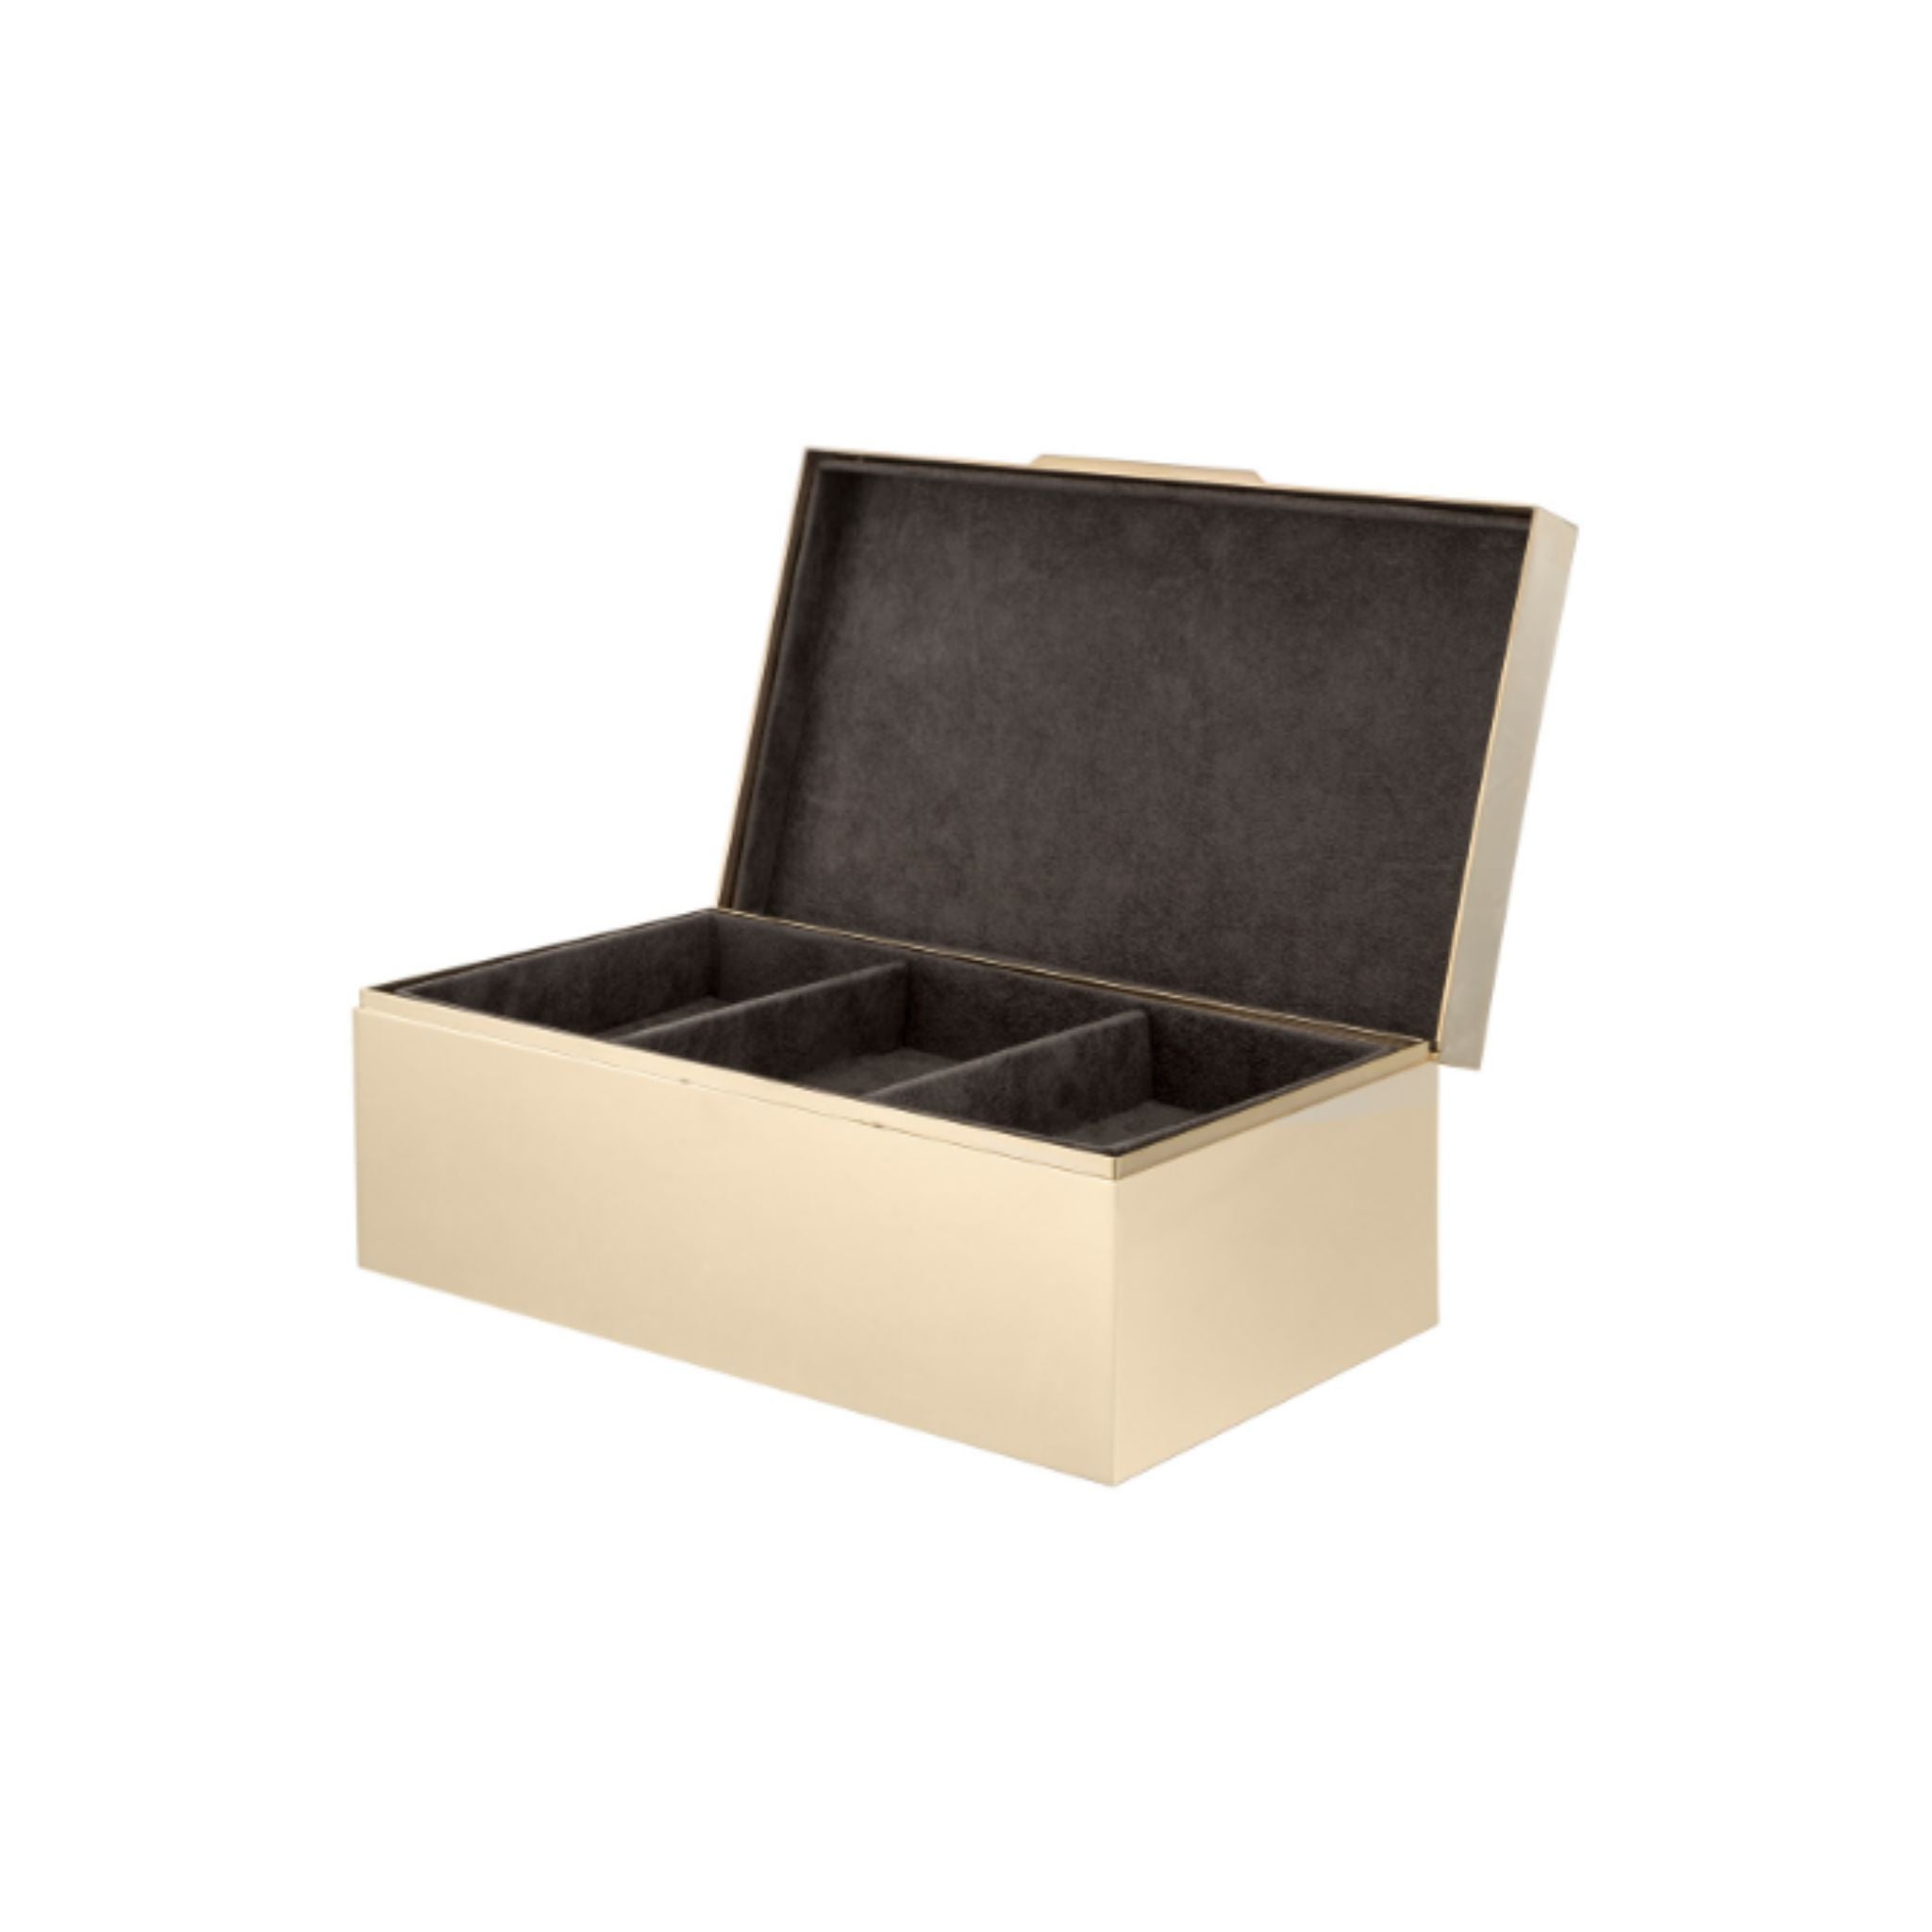 Treasure Messing rechteckige Box mit Reißverschluss oben - ilbronzetto